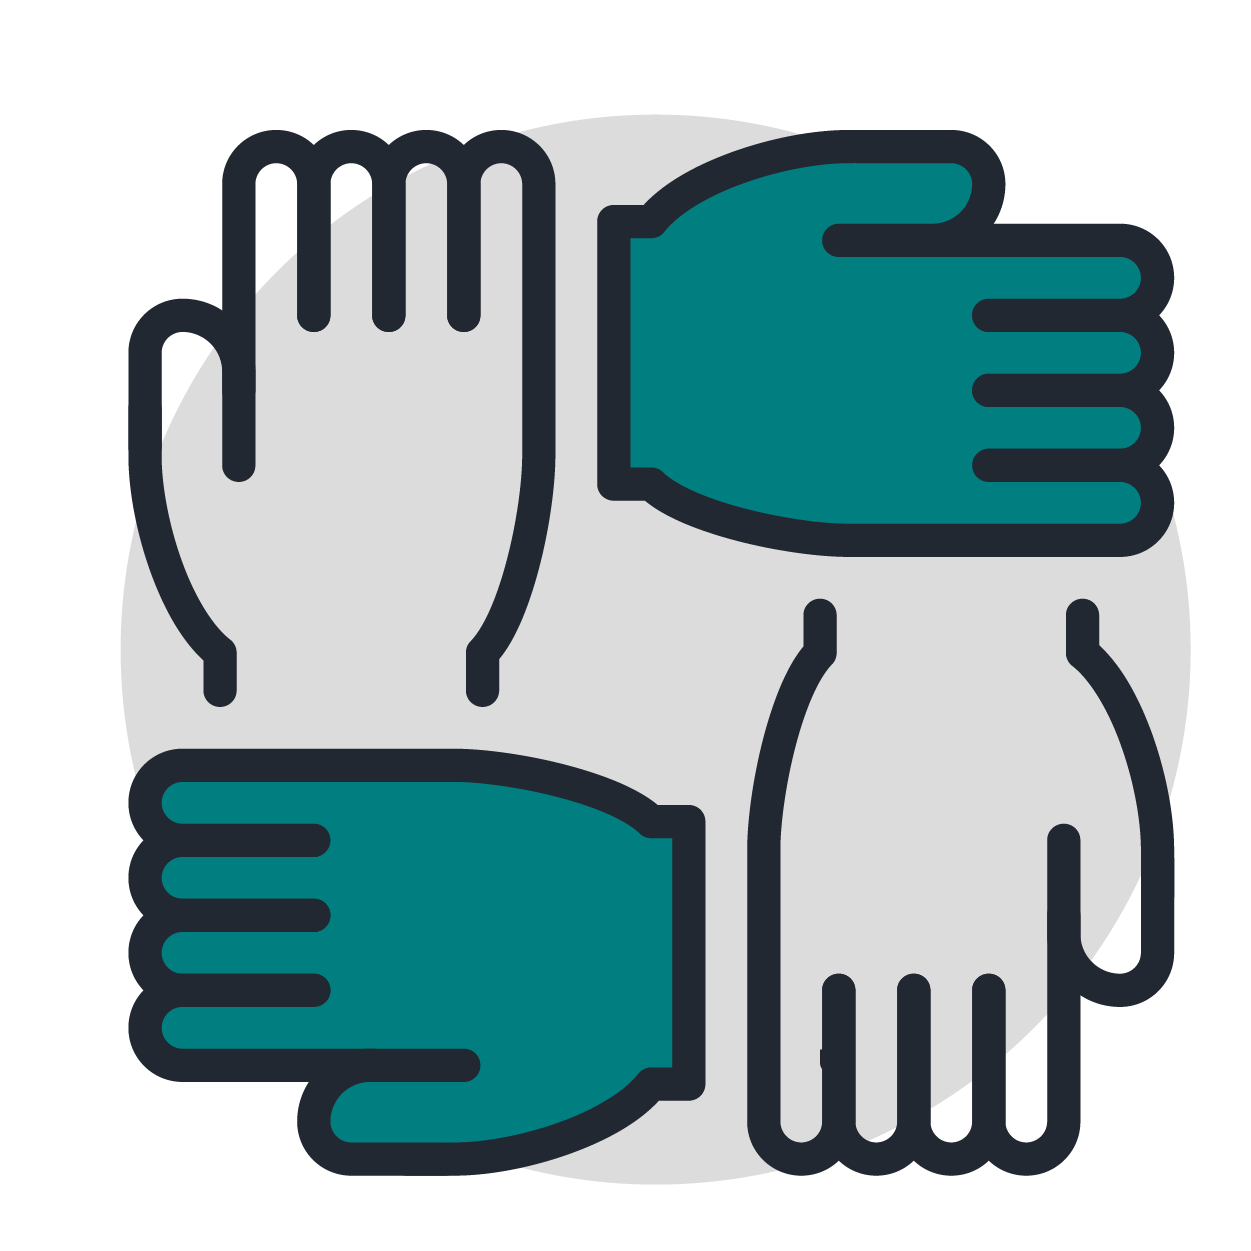 Teamwork hands icon